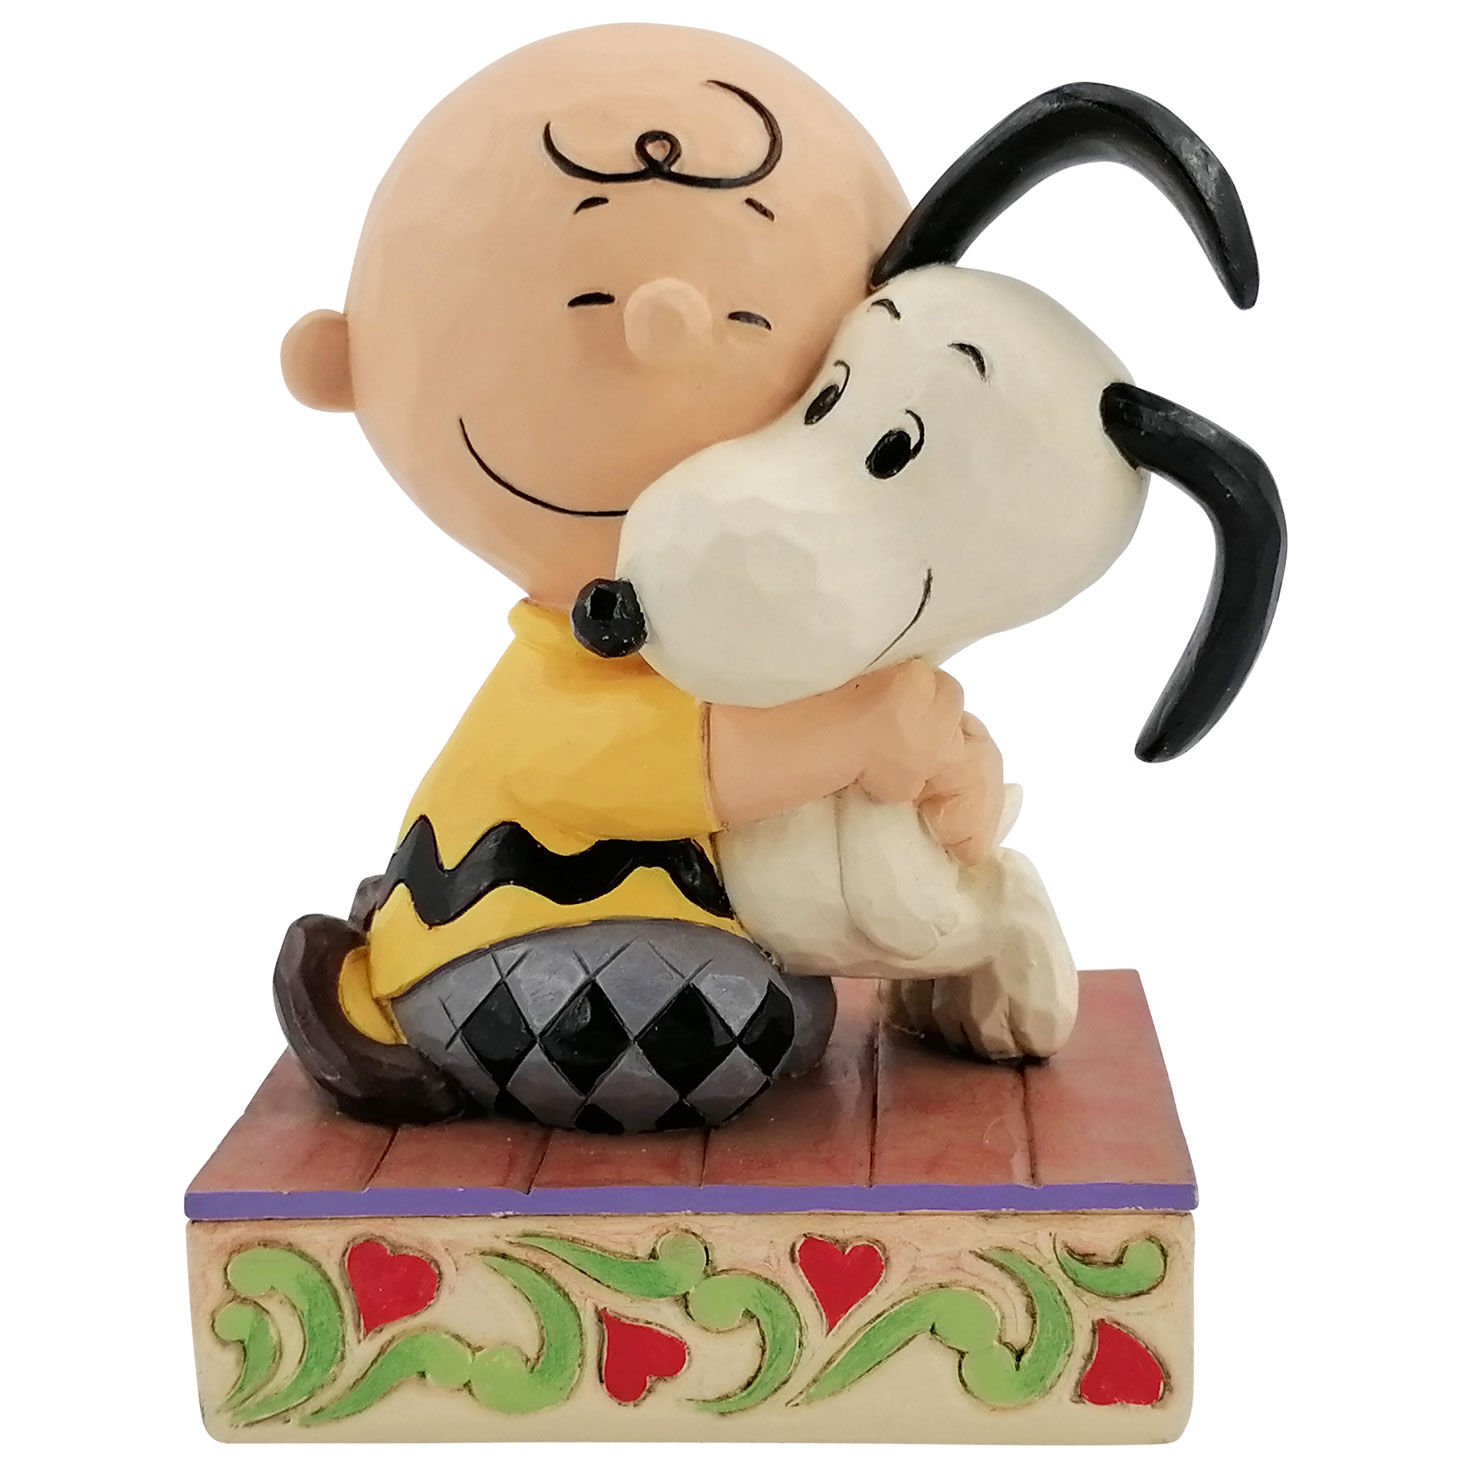 Jim Shore Charlie Brown Hugging Snoopy Figurine, 4.5